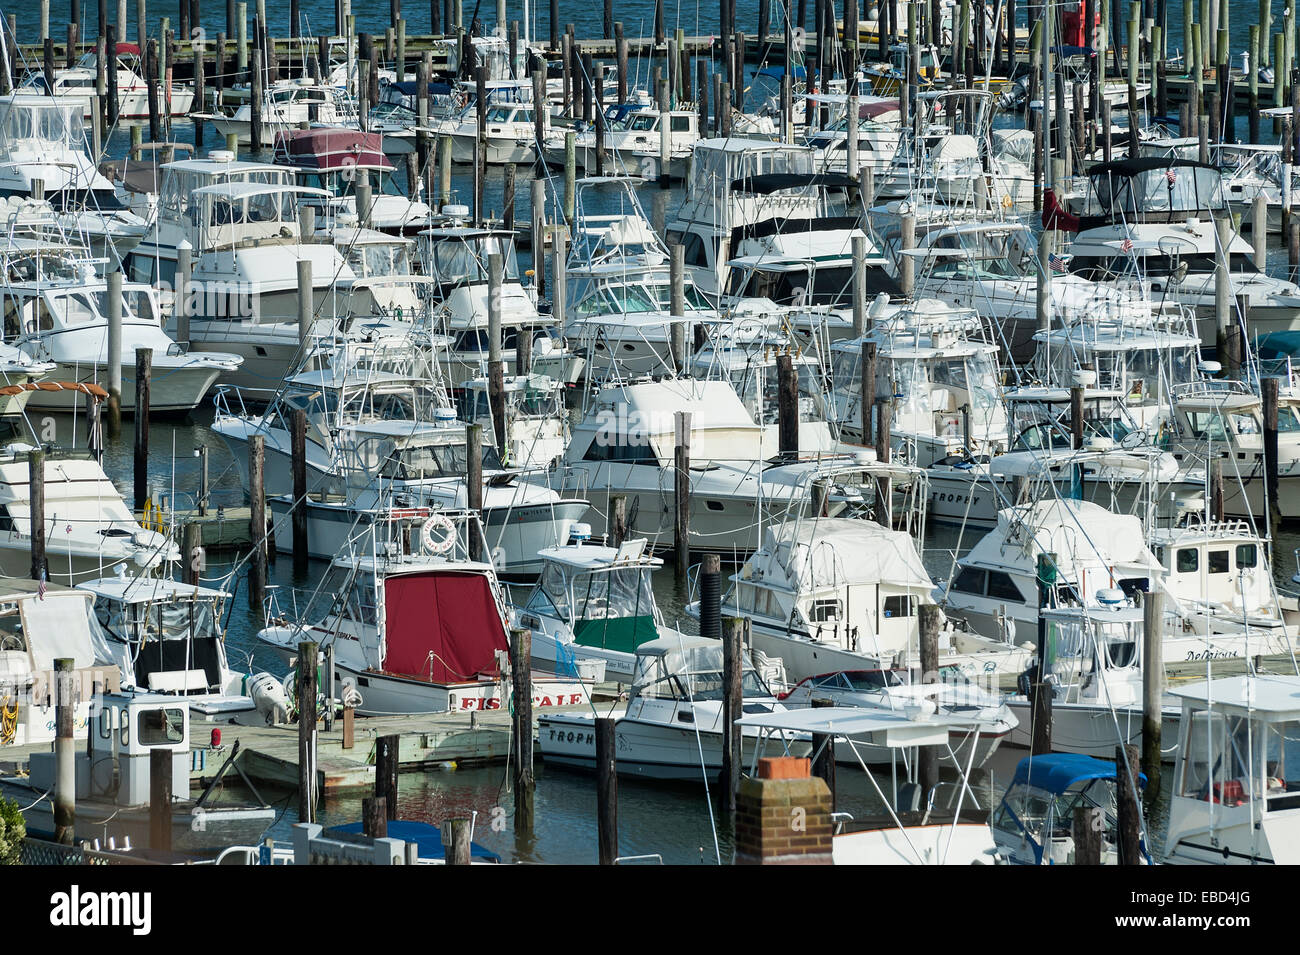 Boats docked in marina, Stock Photo